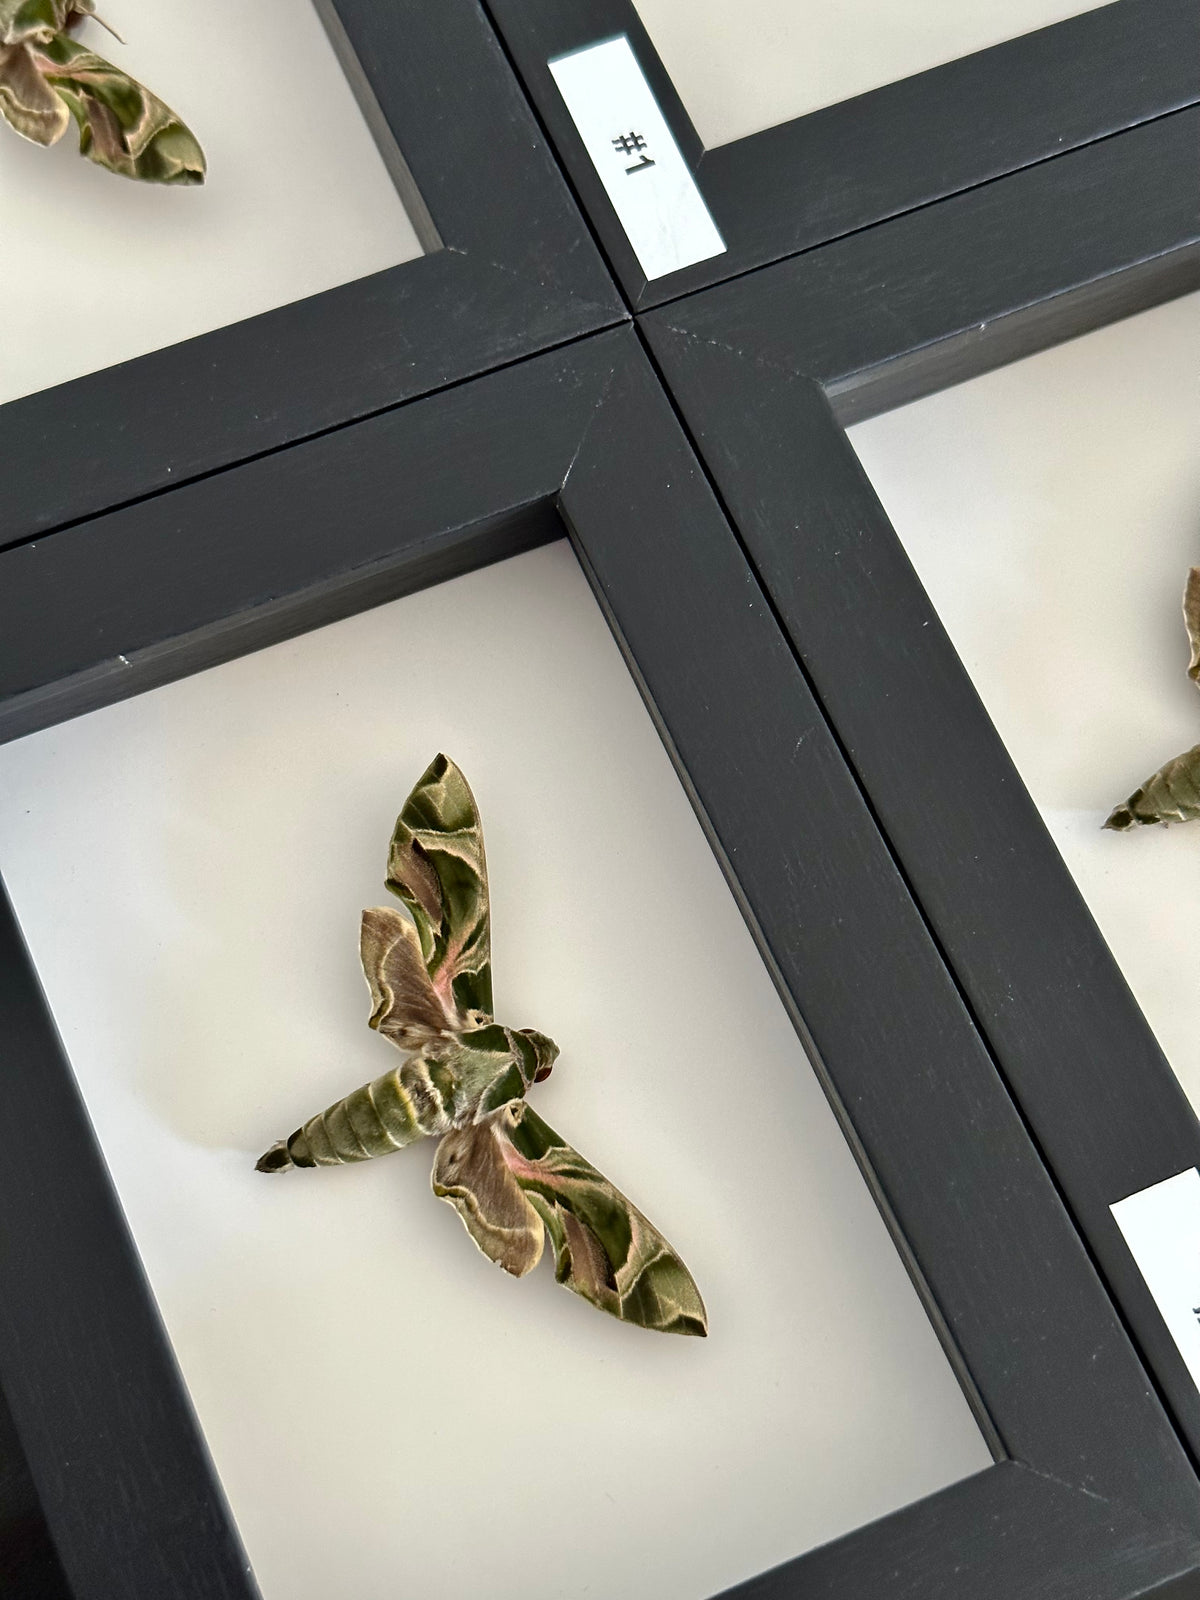 Oleander Hawk-moth / Daphnis Nerii in a frame